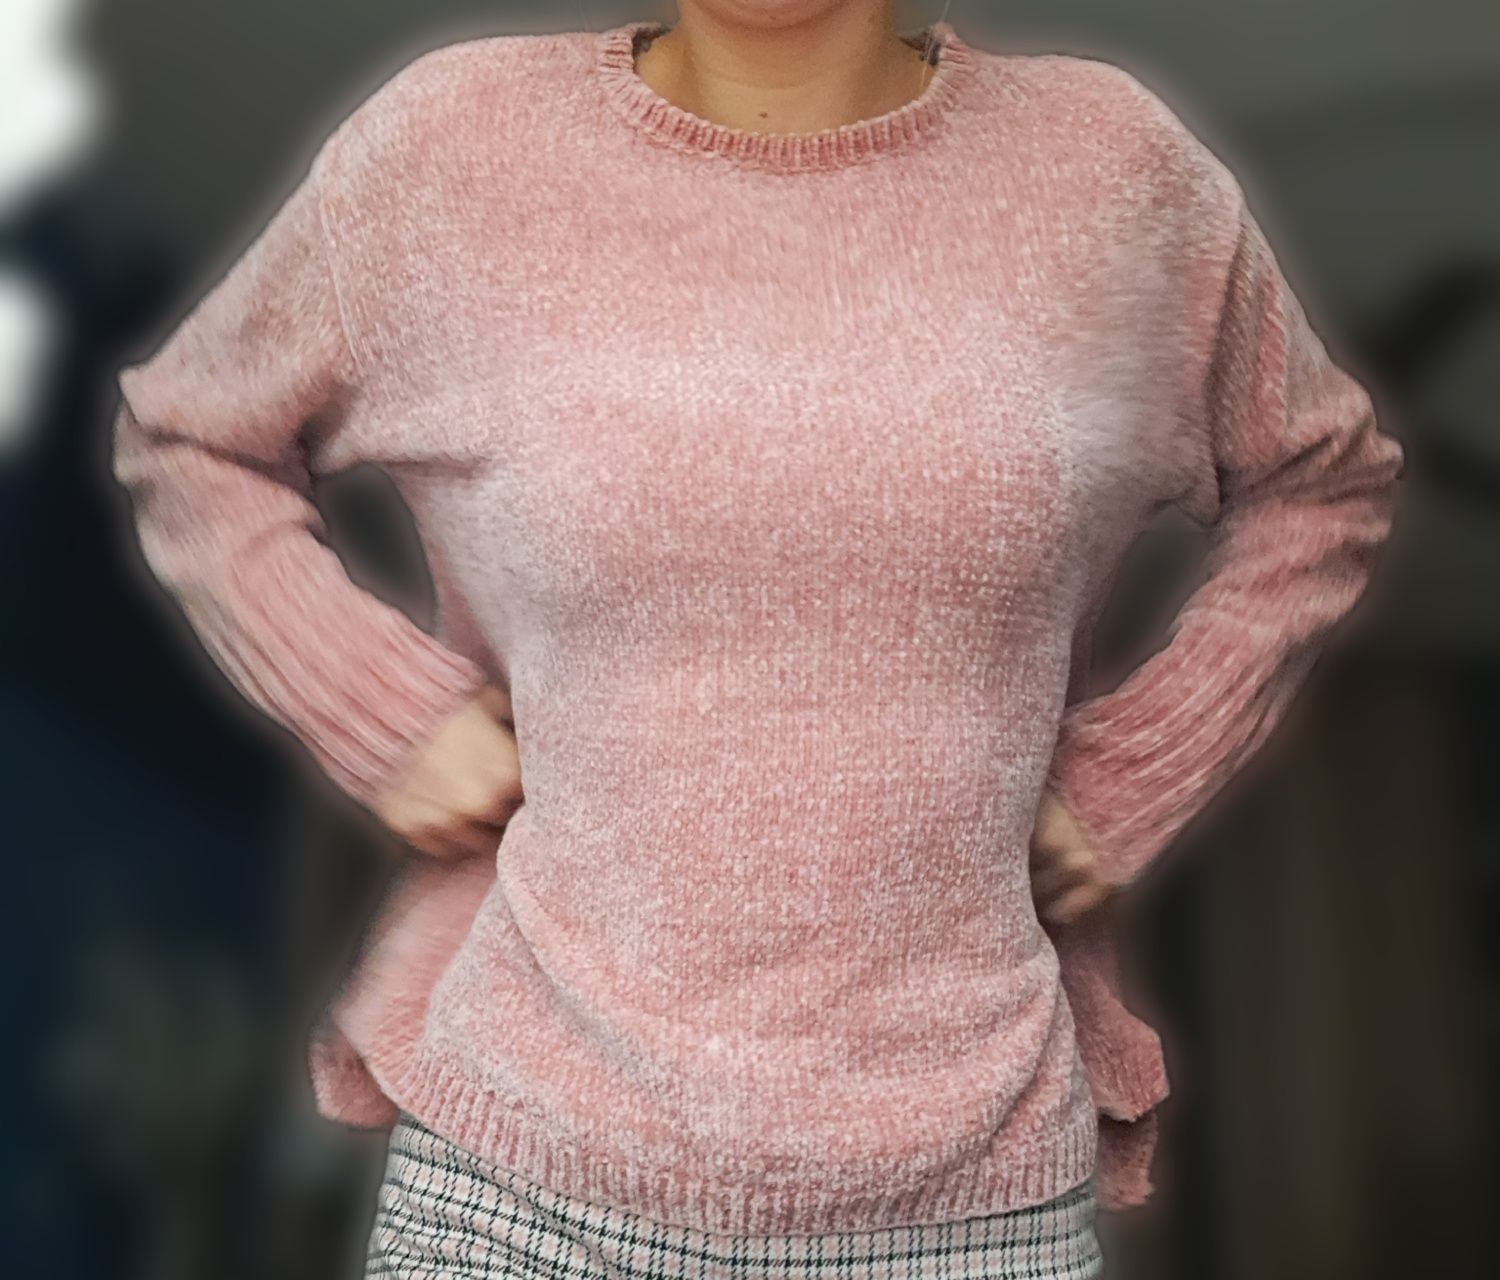 Gruby sweter różowy